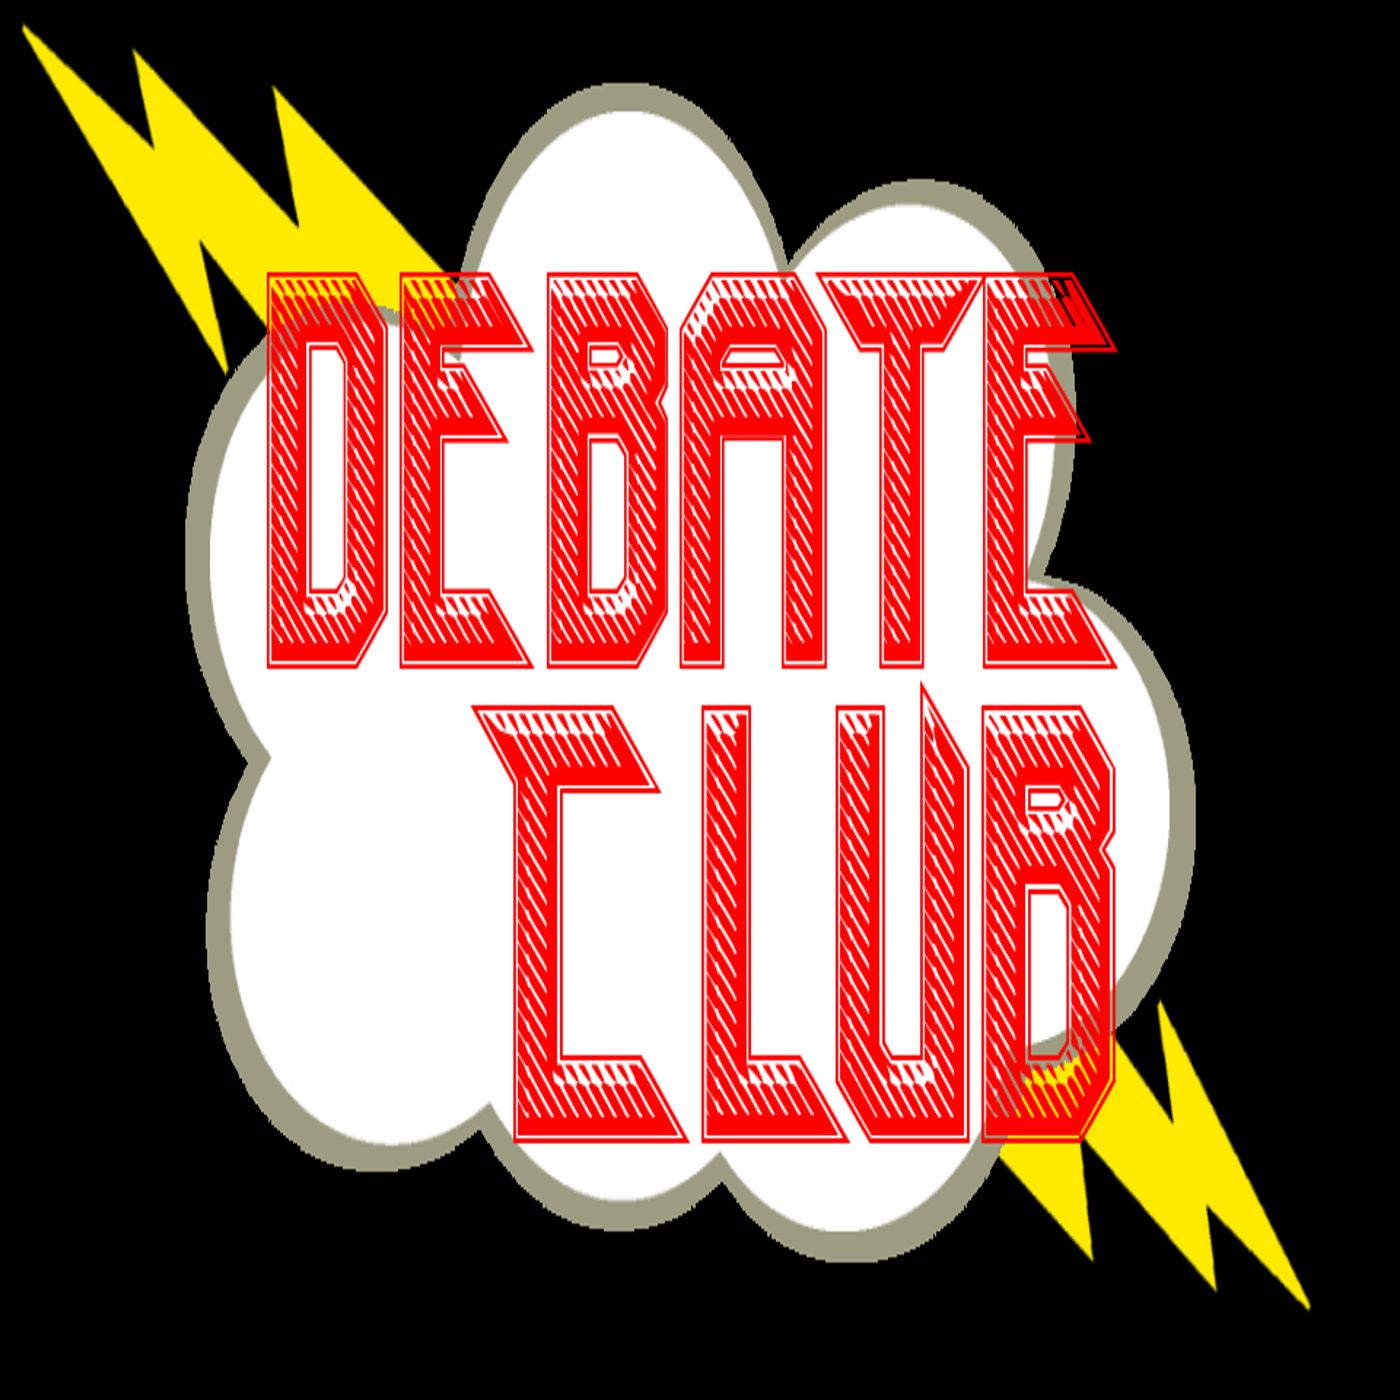 Debate Club